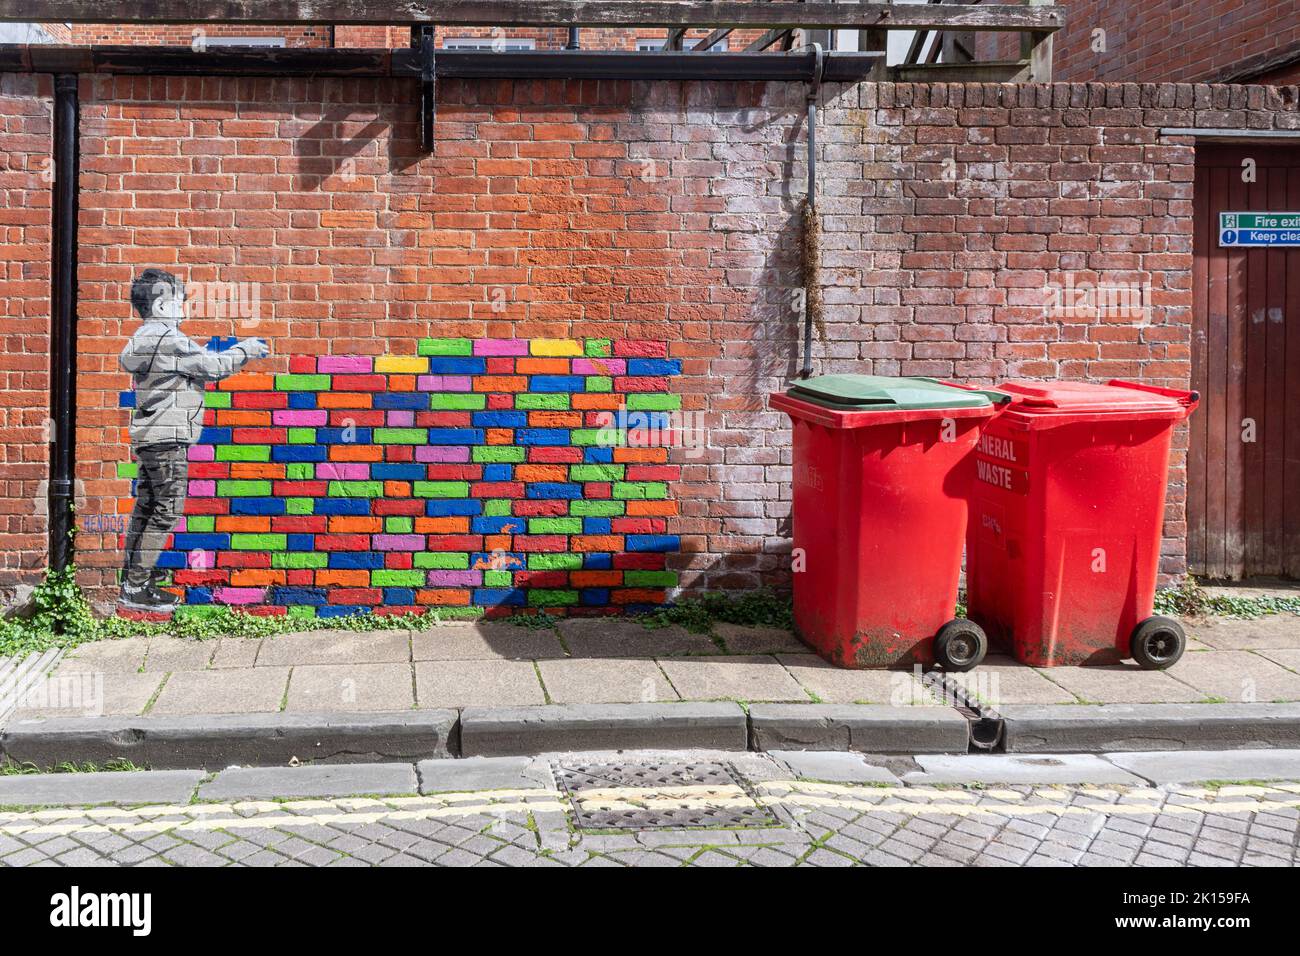 Murale Street art di Hendog, un artista anonimo, raffigurante un giovane ragazzo che costruisce un colorato muro di lego, a Winchester, Hampshire, Regno Unito, accanto ai bidoni. Foto Stock